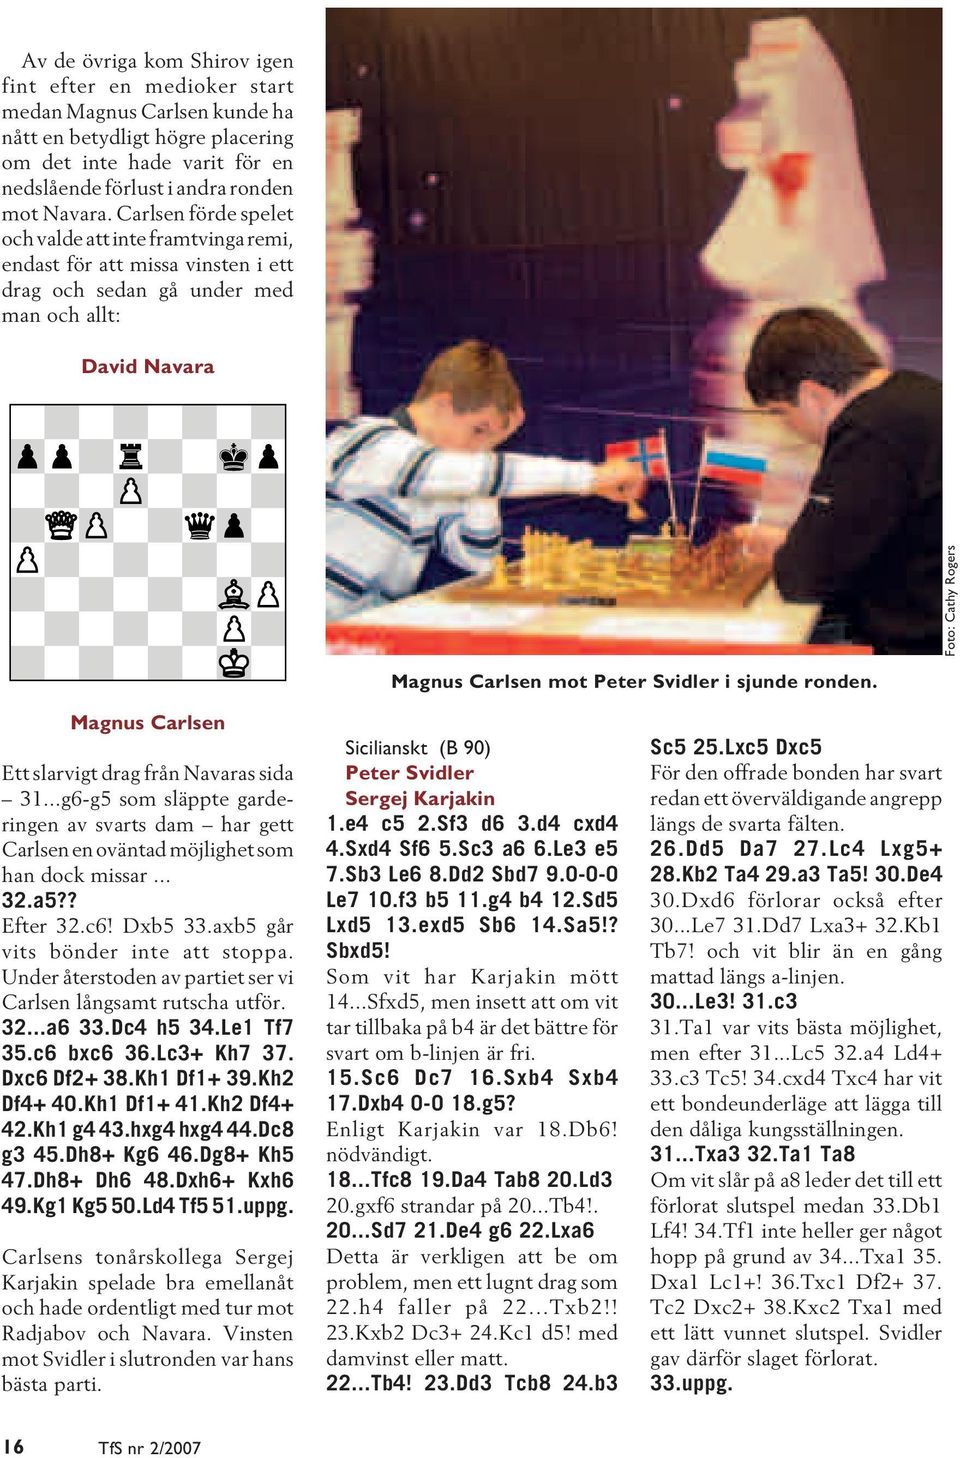 i sjunde ronden. Magnus Carlsen Ett slarvigt drag från Navaras sida 31...g6-g5 som släppte garderingen av svarts dam har gett Carlsen en oväntad möjlighet som han dock missar... 32.a5?? Efter 32.c6!